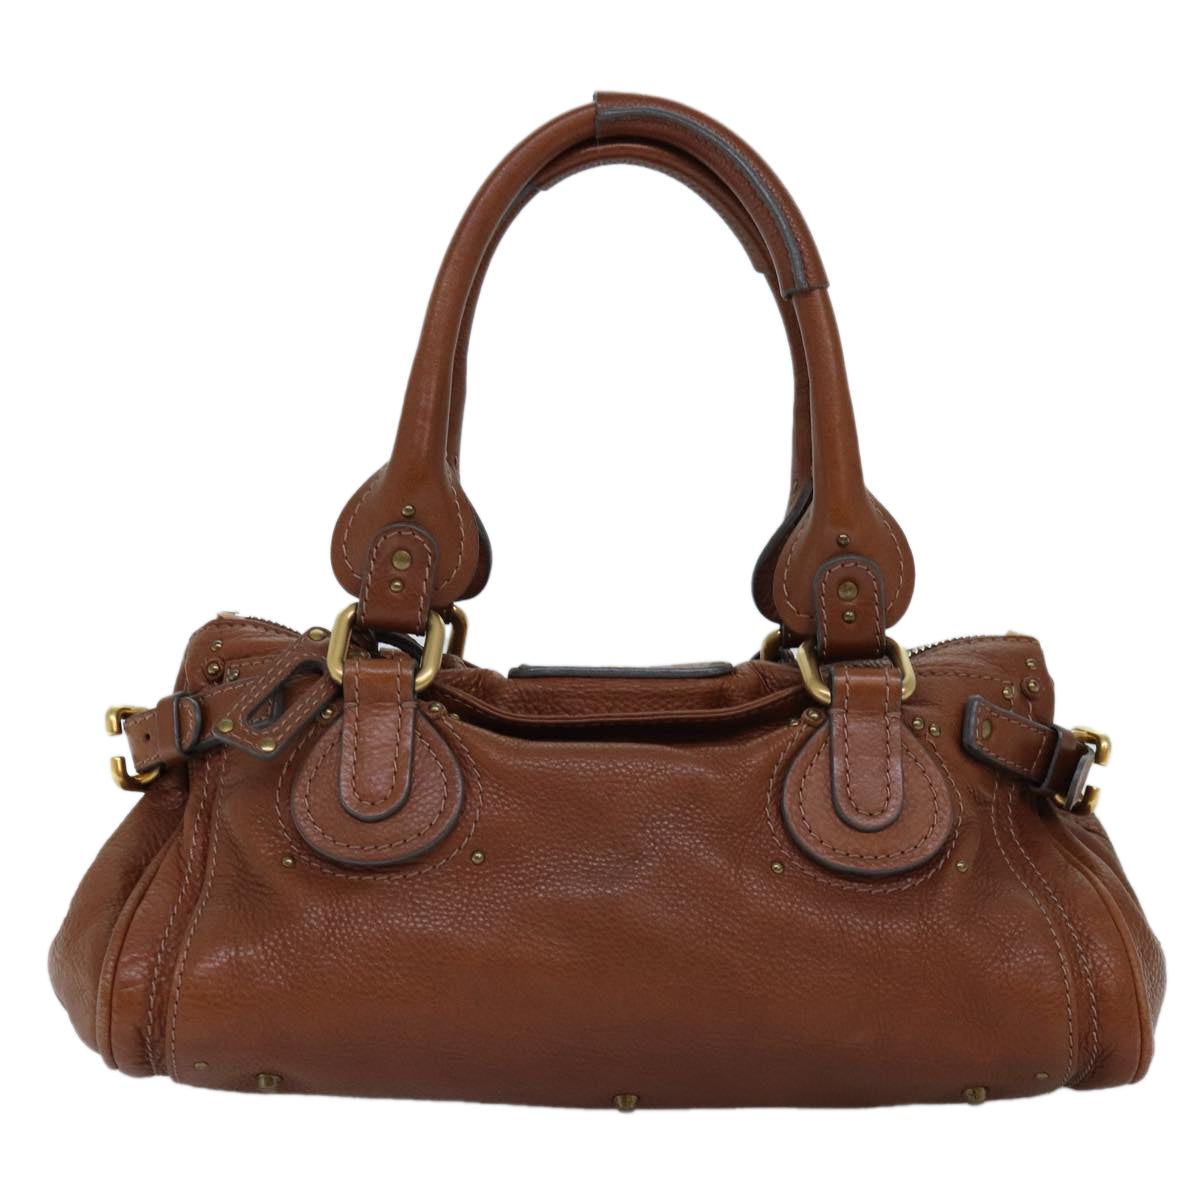 Chloe Paddington Hand Bag Leather Brown Auth am6256 - 0